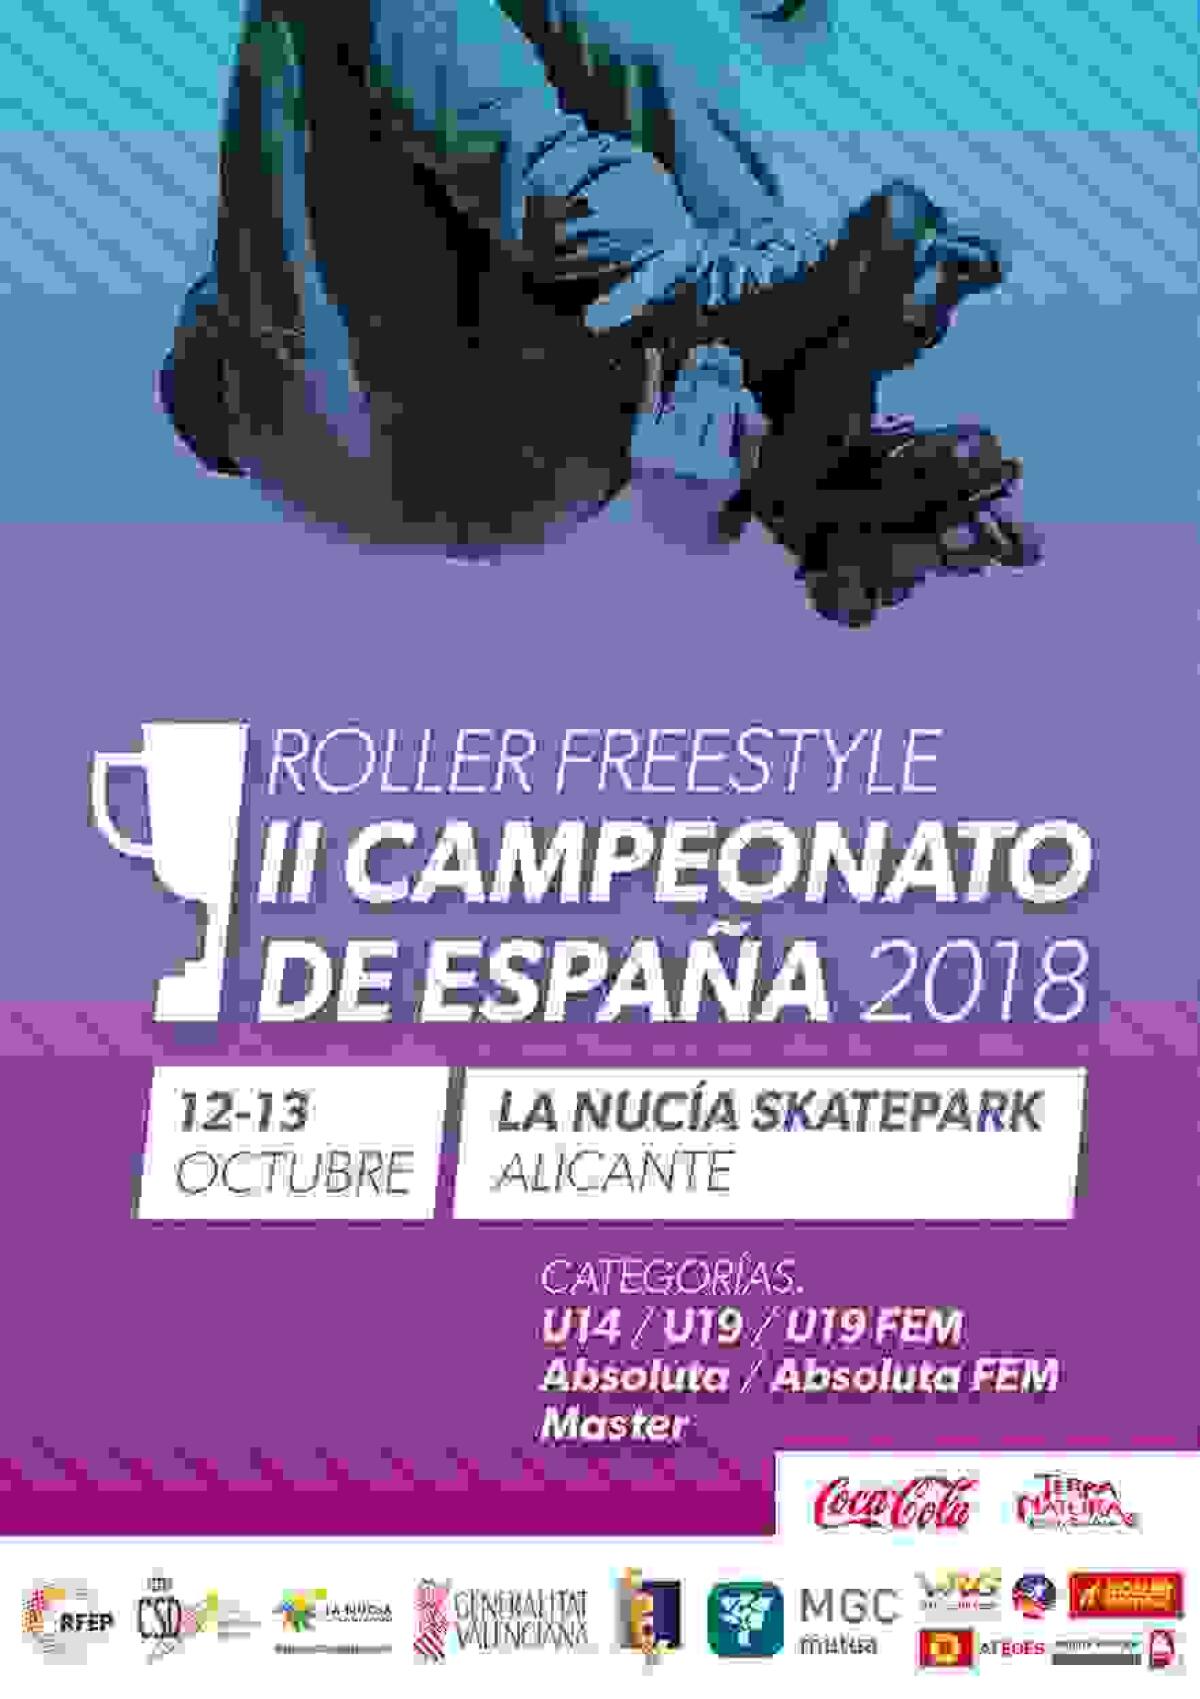 Mañana comienza el Nacional de Roller Freestyle en #LaNuciaCiudadDelDeporte